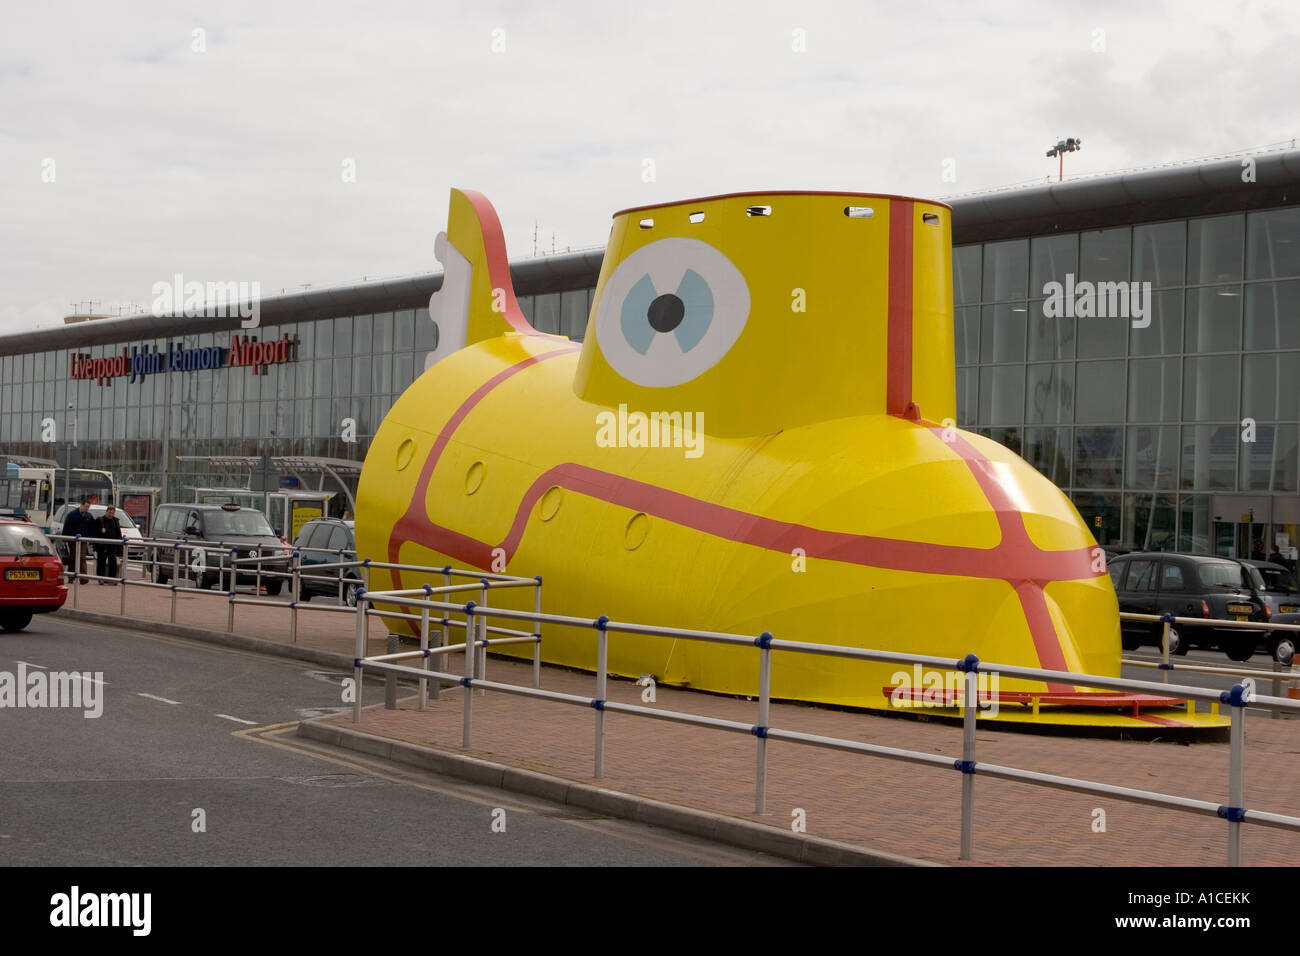 Le sous-marin jaune des Beatles à l'extérieur de l'aéroport John Lennon de Liverpool Banque D'Images